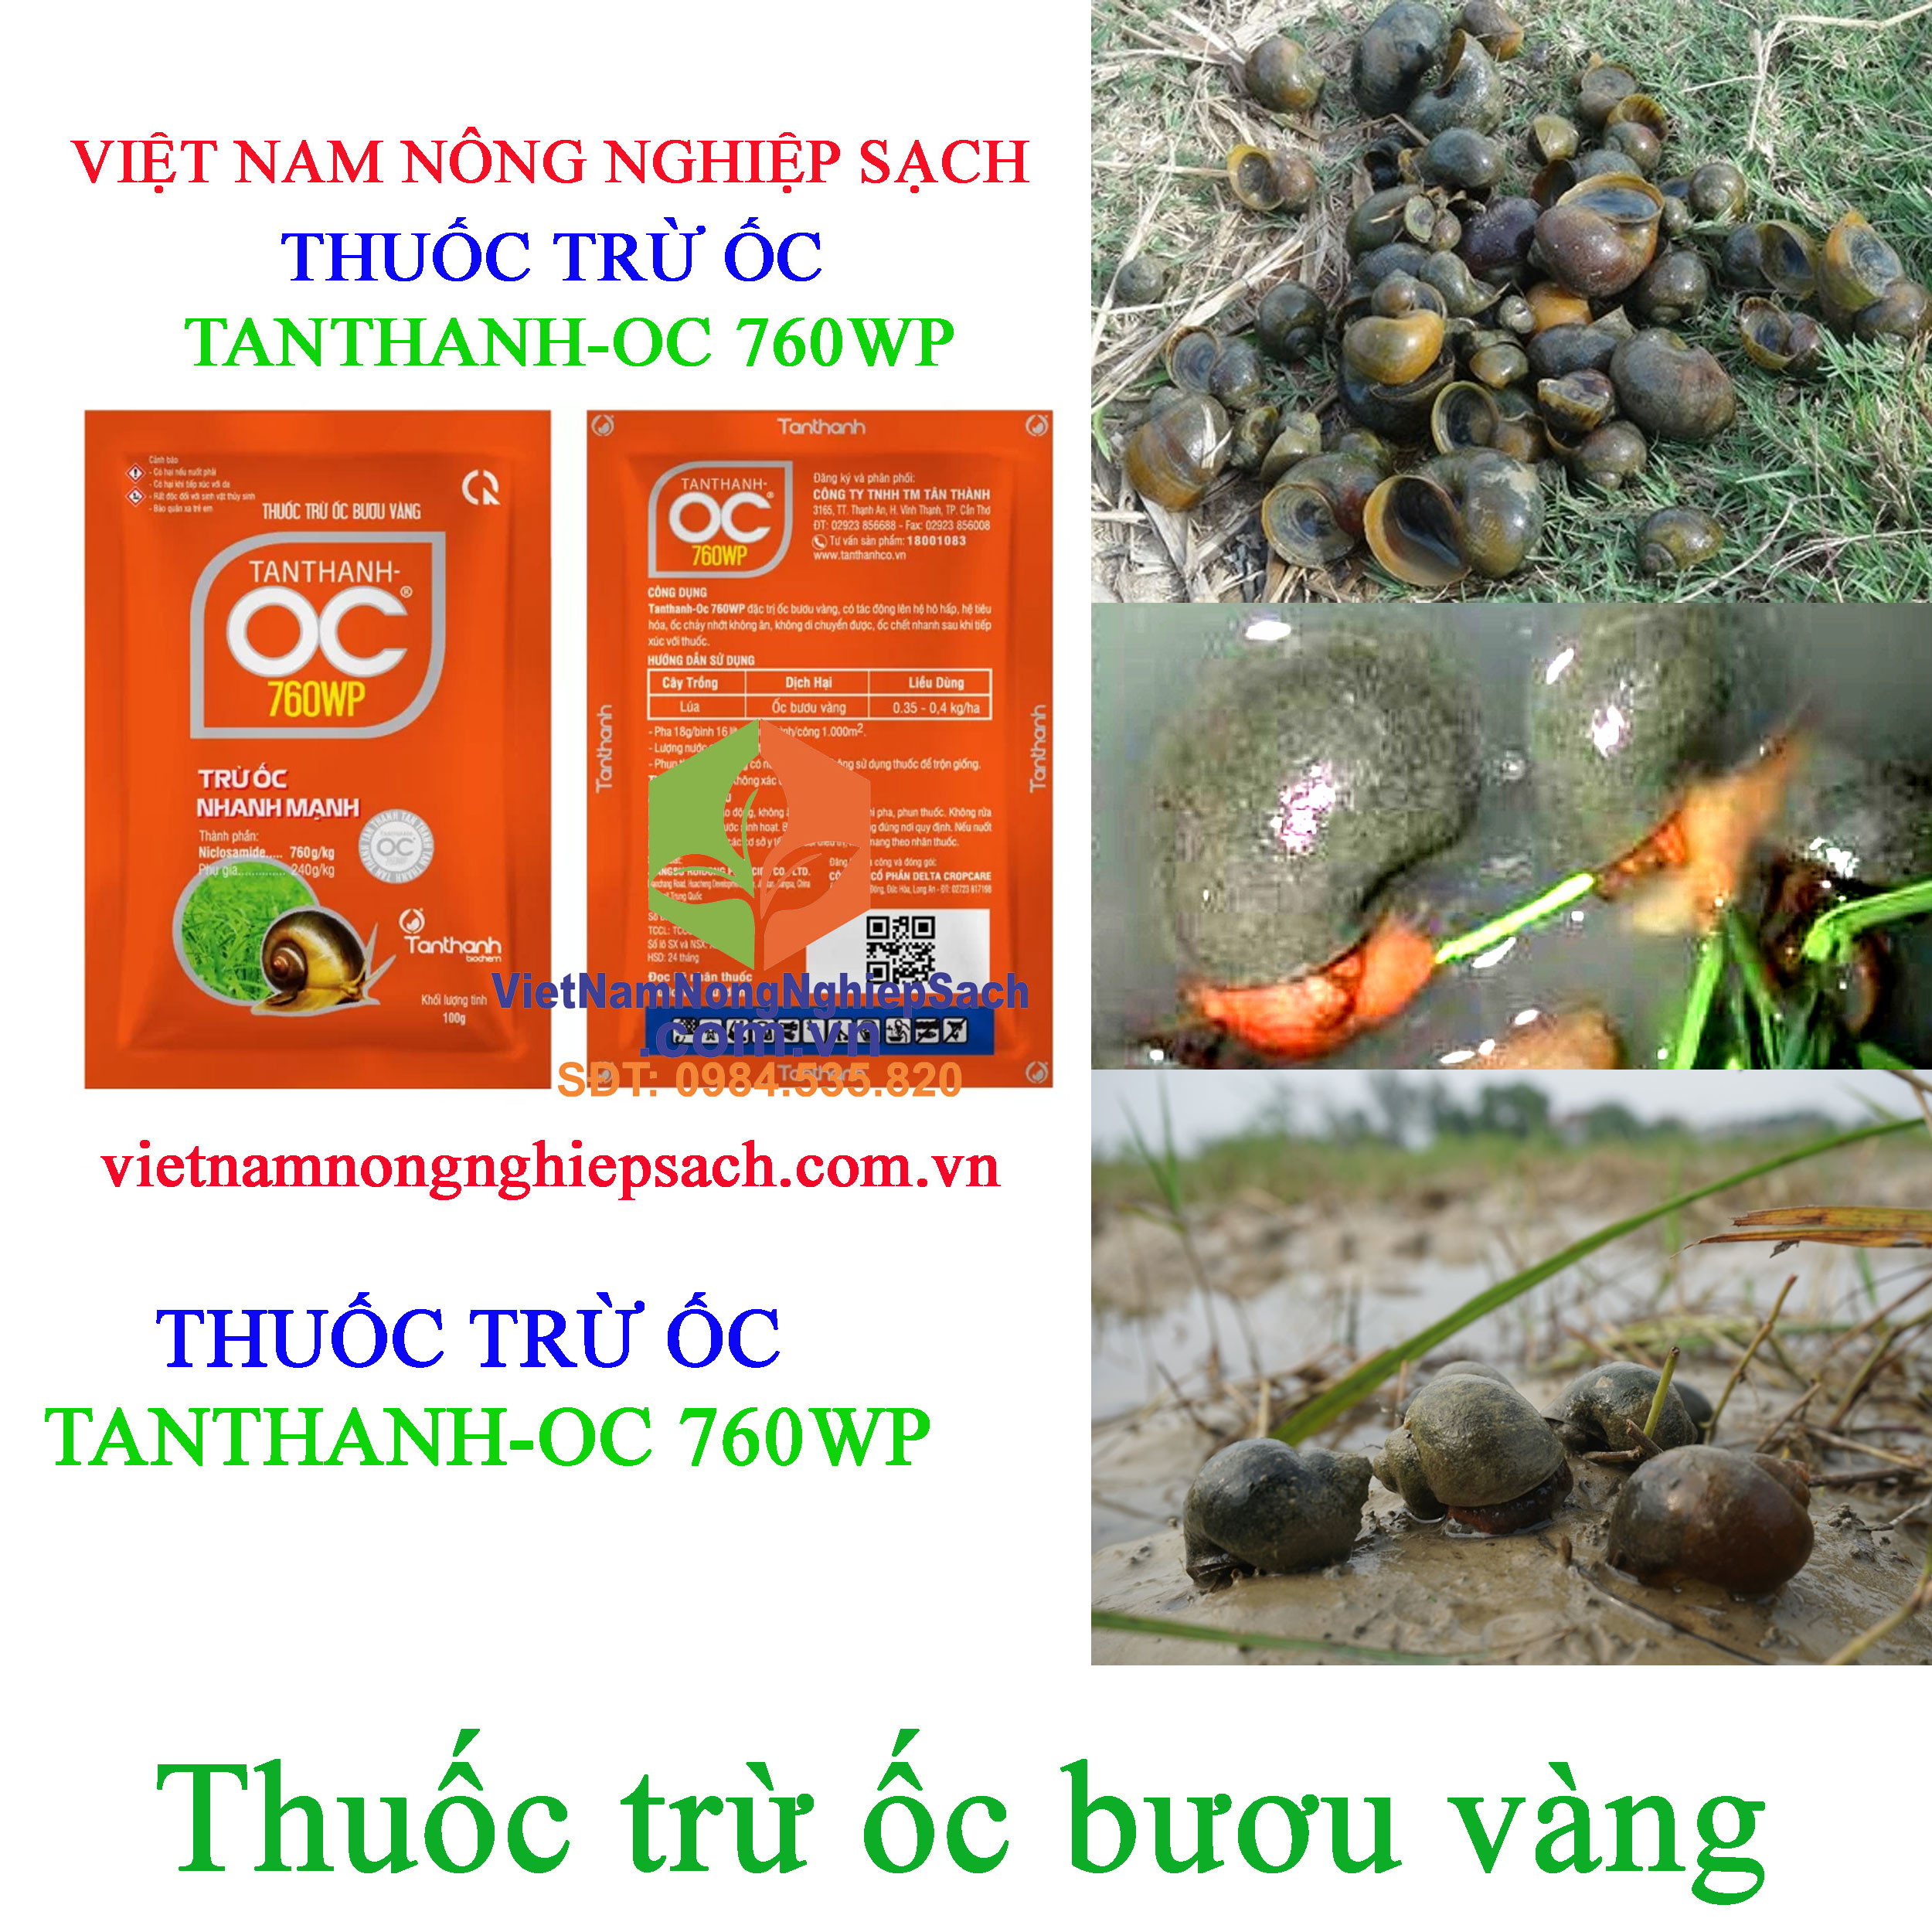 TANTHANH-OC-760WP-ỐC-BƯƠU-VÀNG